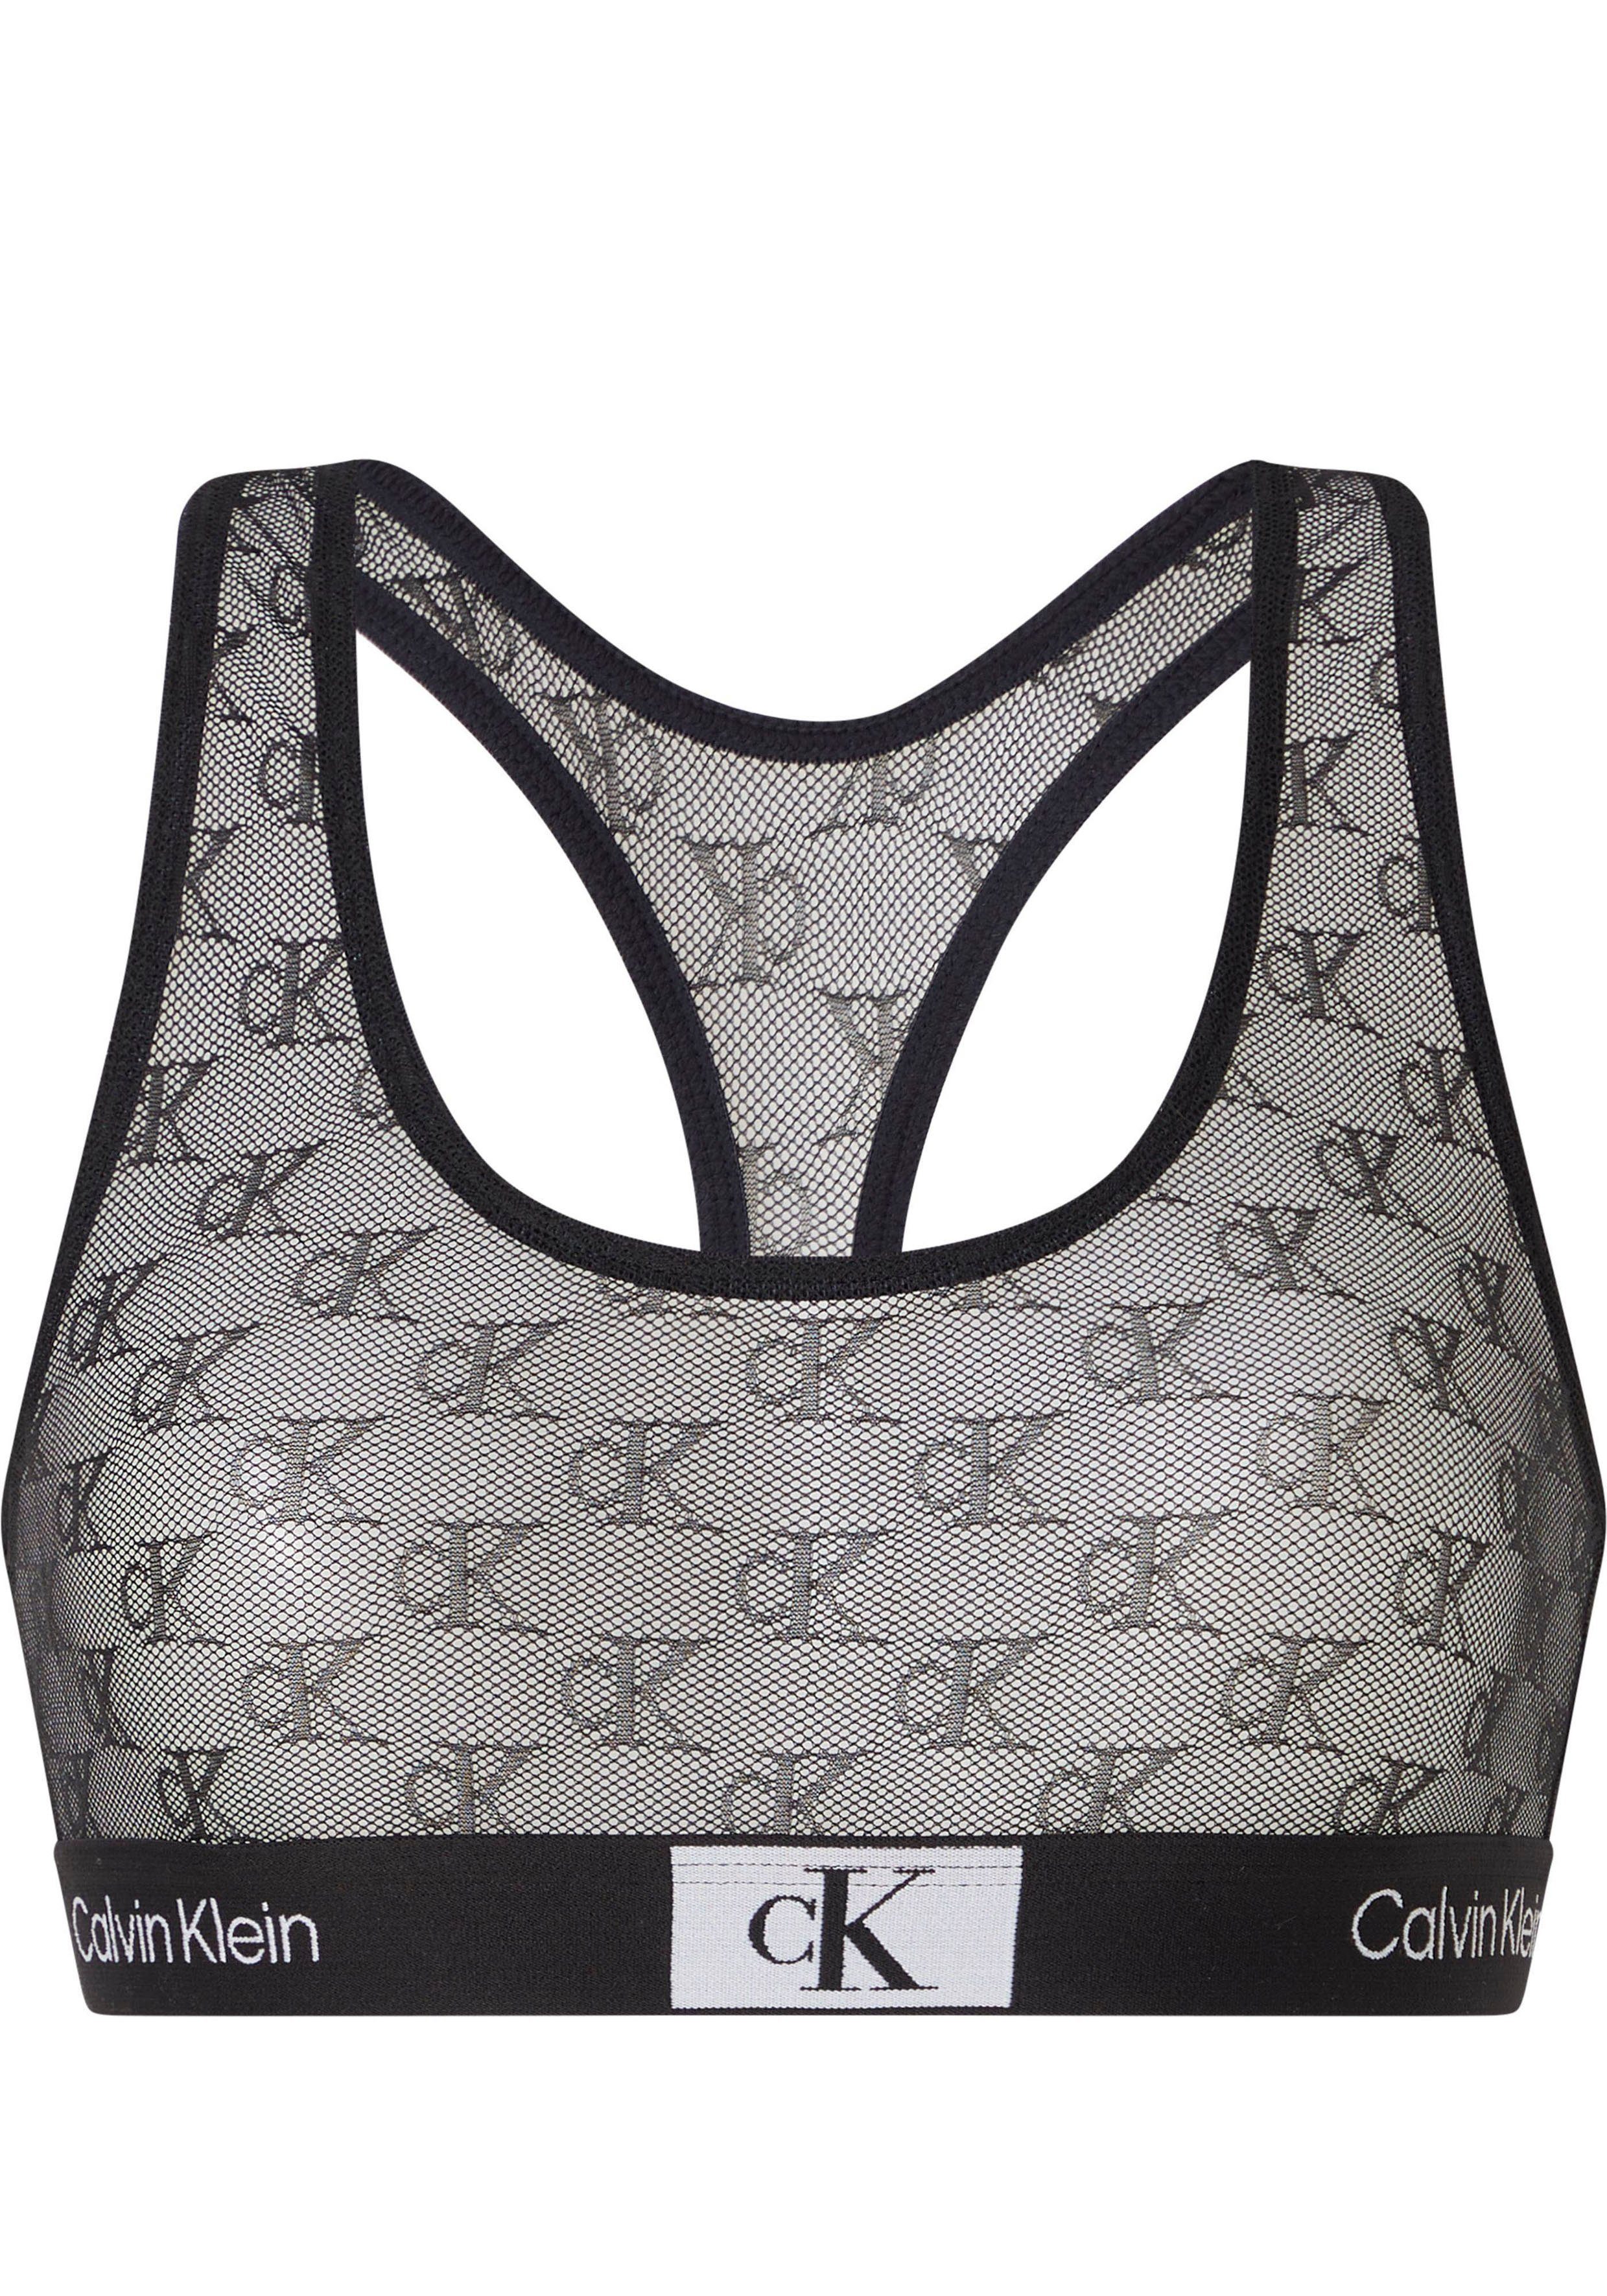 Calvin Klein Underwear mit BRALETTE UNLINED Bralette-BH CK-Monogrammen